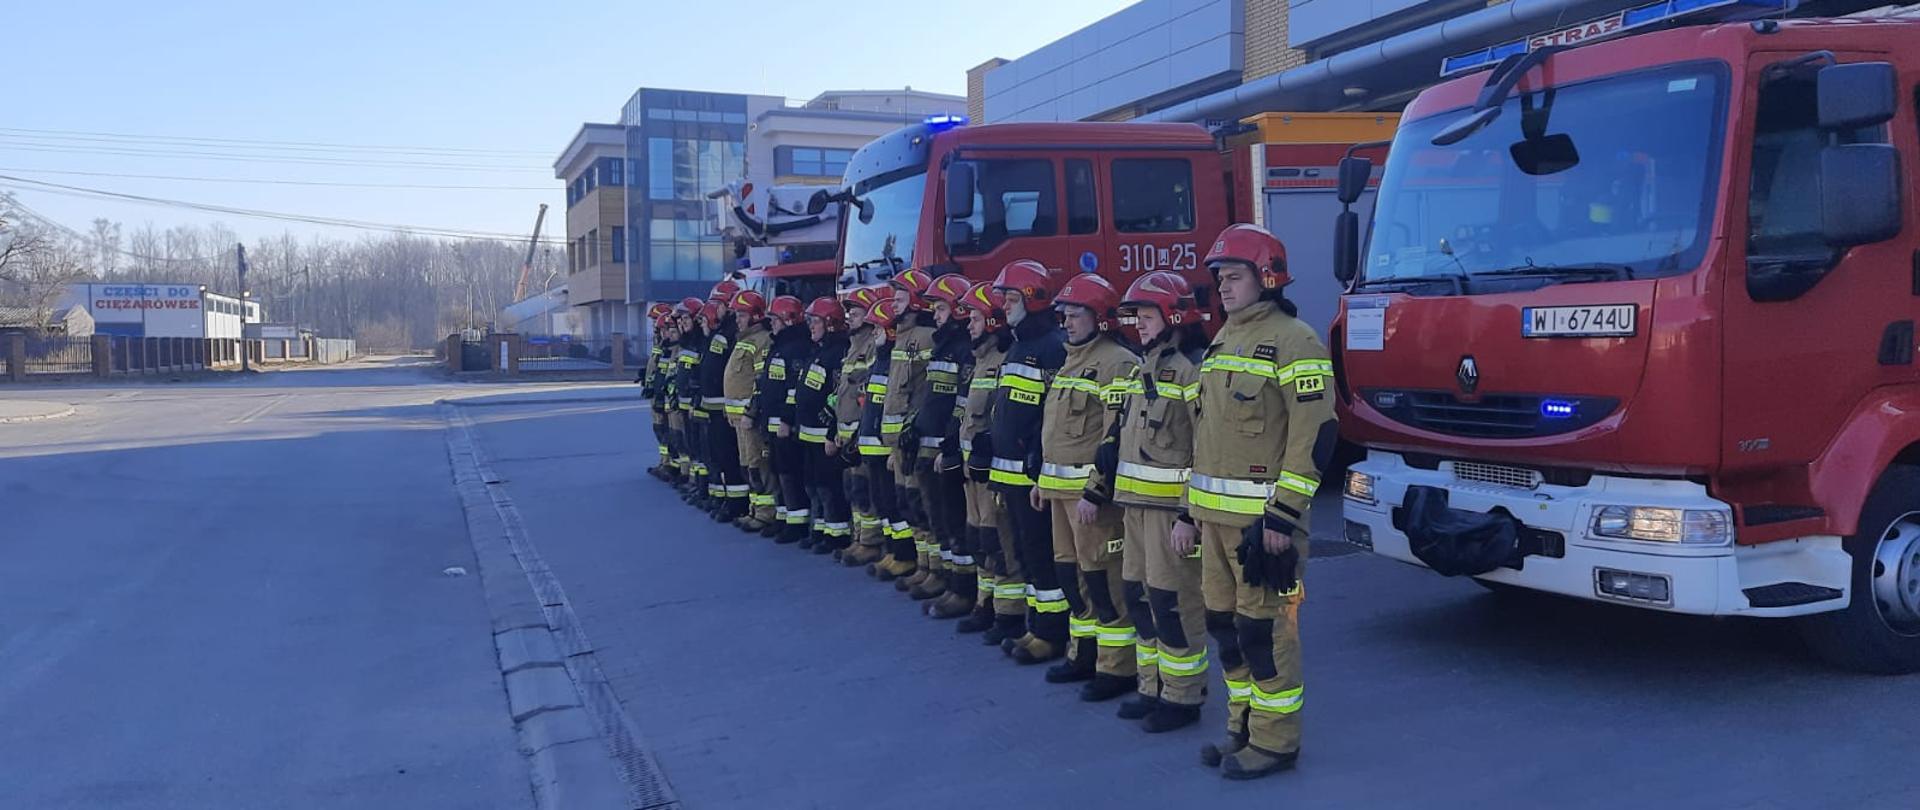 Minuta ciszy dla poległych ukraińskich strażaków - strażacy z JRG 10